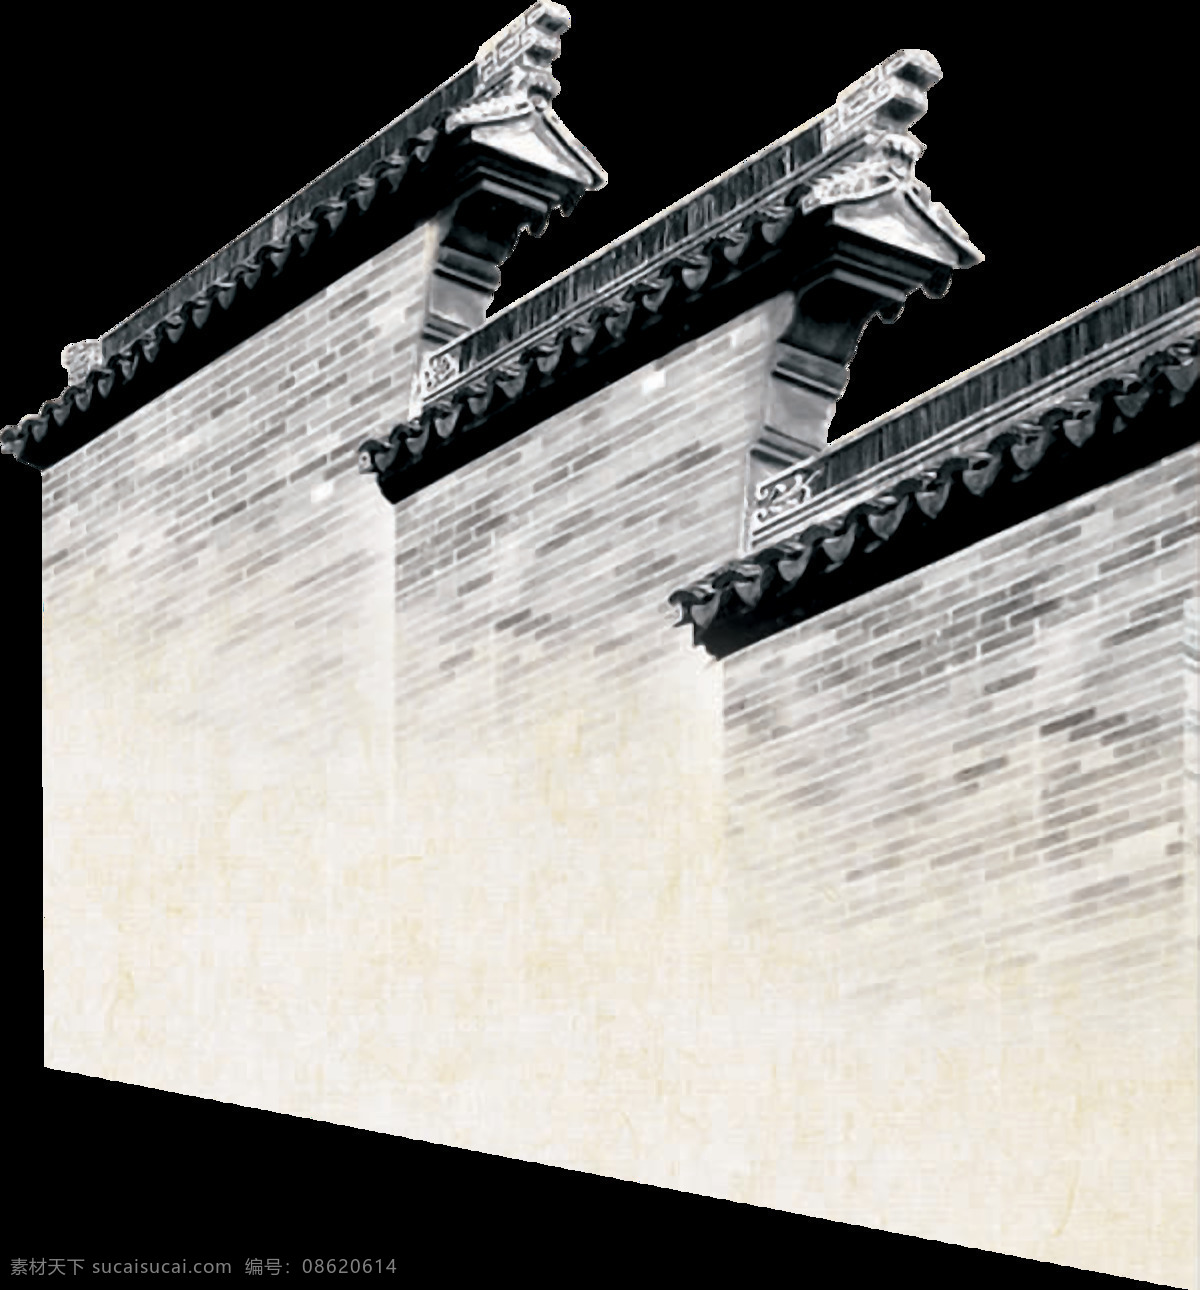 中式 传统 马头 墙 徽派 建筑设计 元素 灰白色 风格 古代建筑 黑白 灰色 中国风 古典 古风